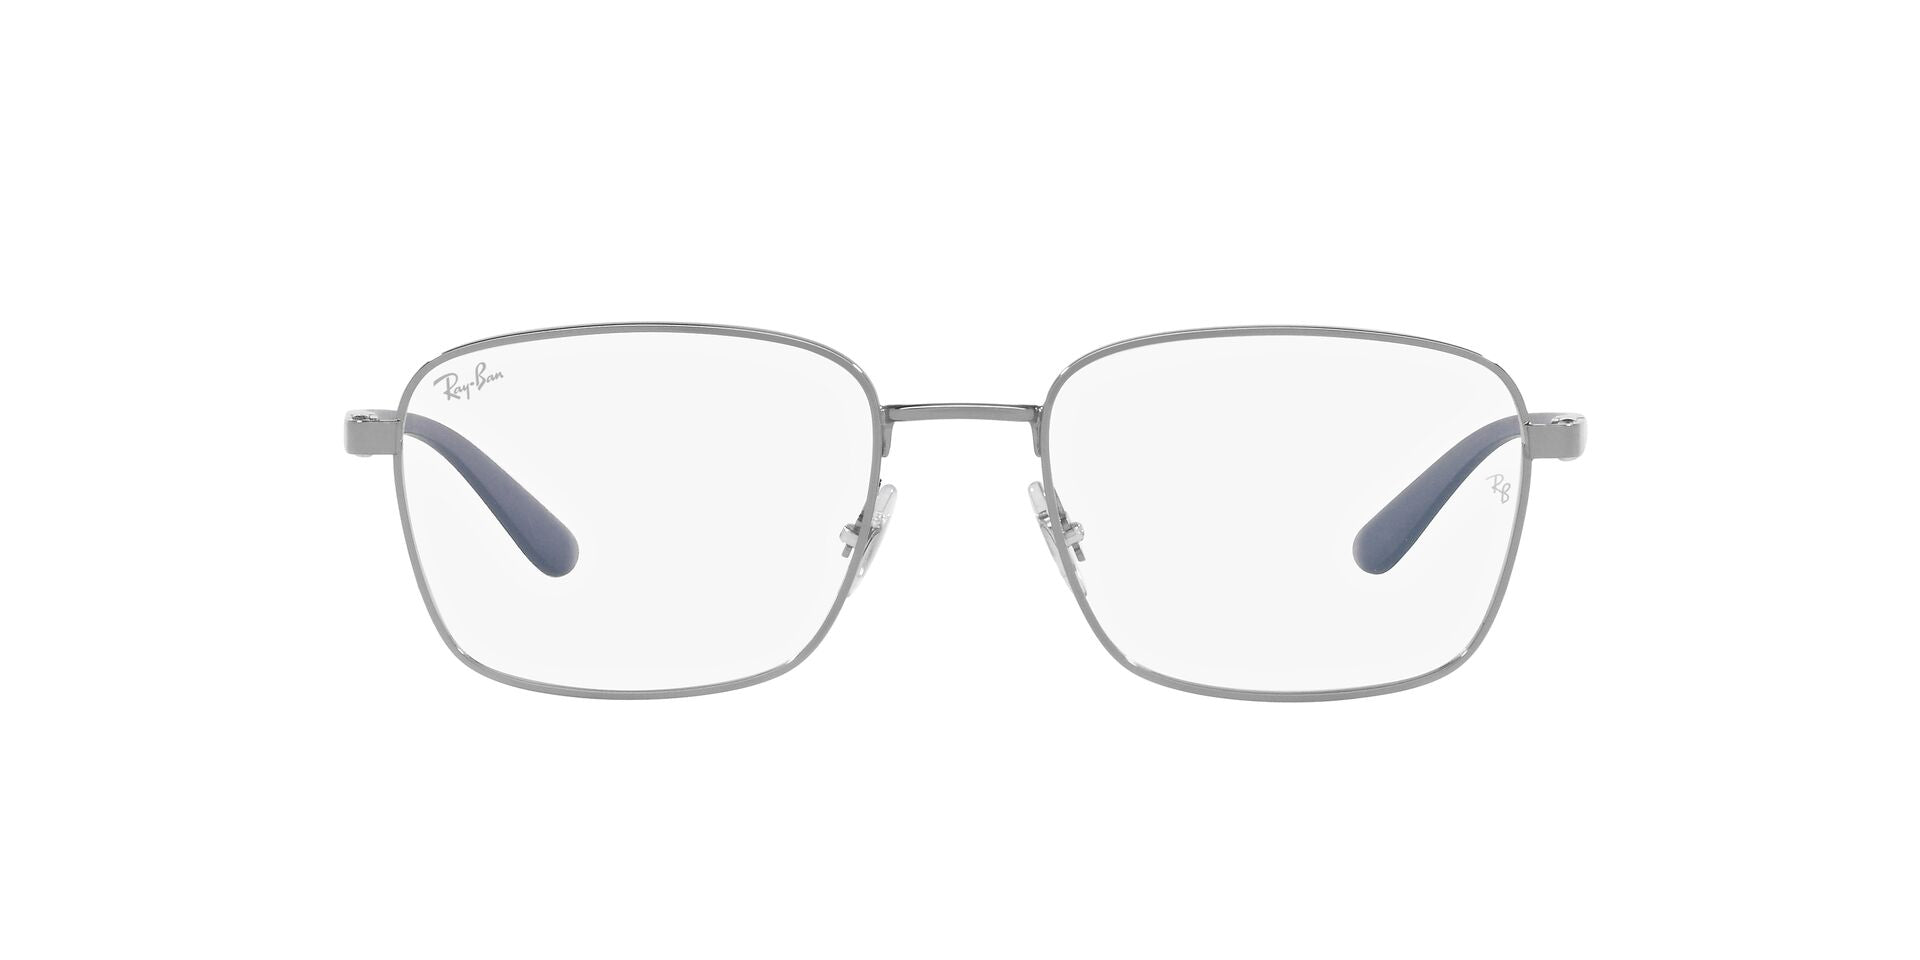 0RX6478 RAY BAN RX Eyeglasses